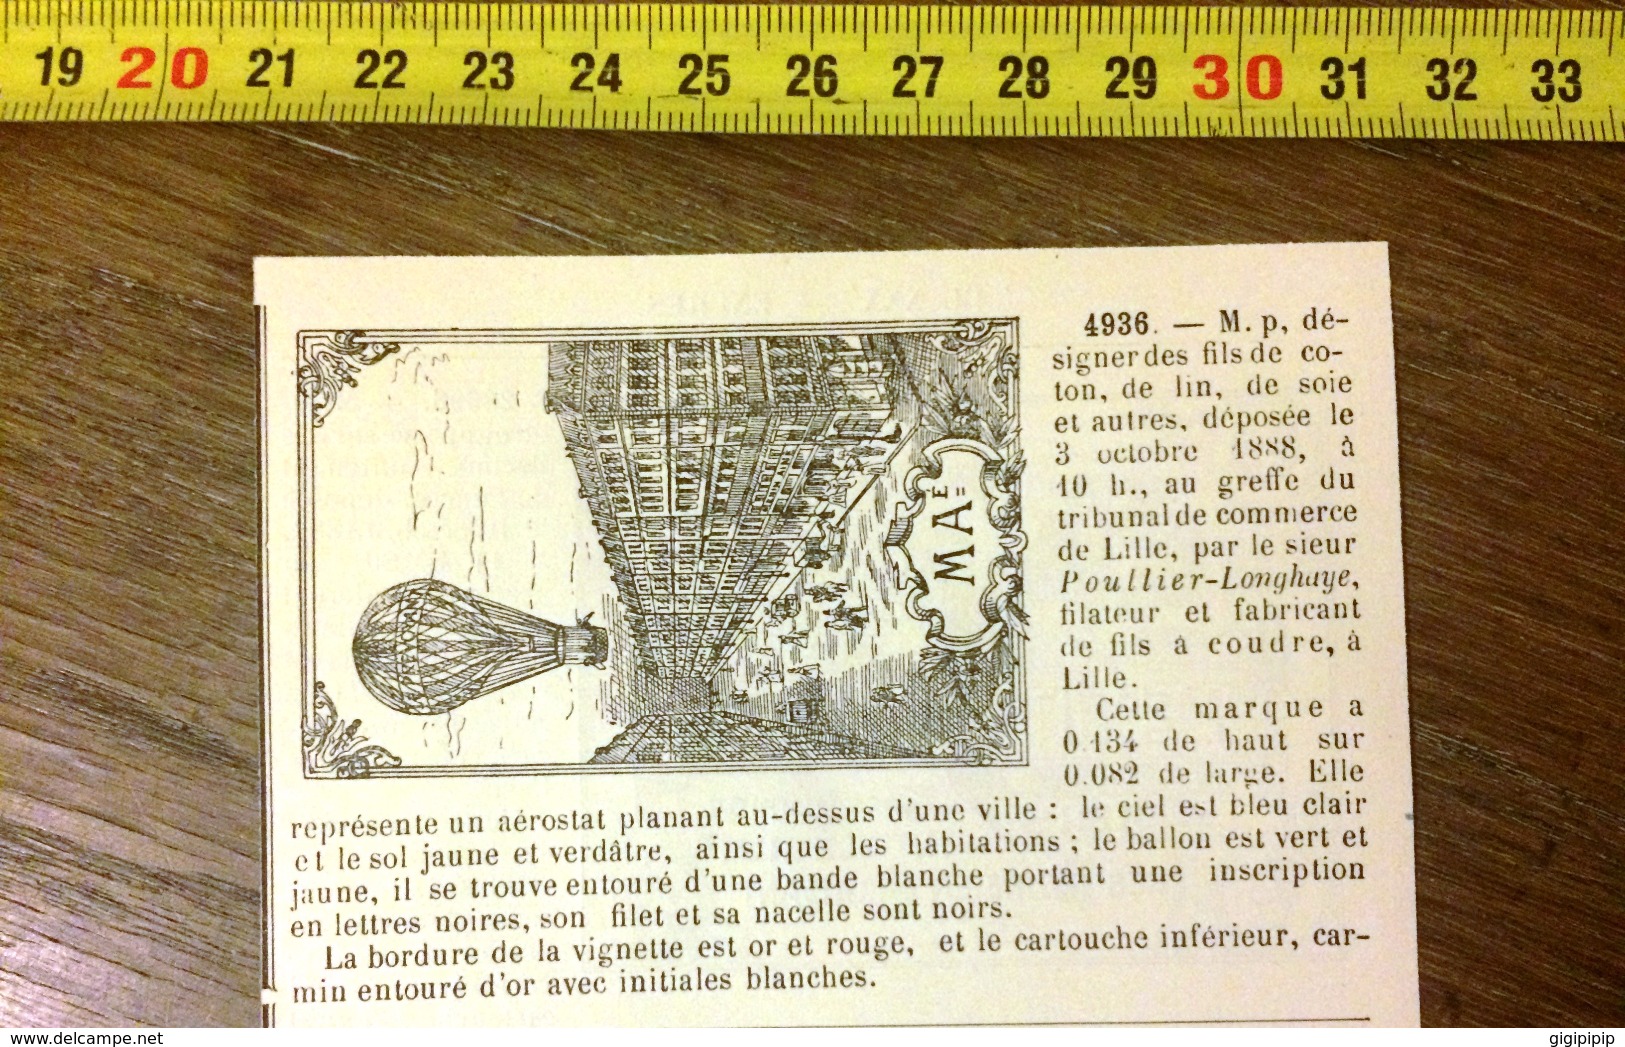 MARQUE DEPOSEE 1888 FILS DE COTON POULLIER LONGHAYE FILATEUR ET FABRICANT A LILLE ENCRE PETITE VERTU MOREL VIDAL PARIS - Collections